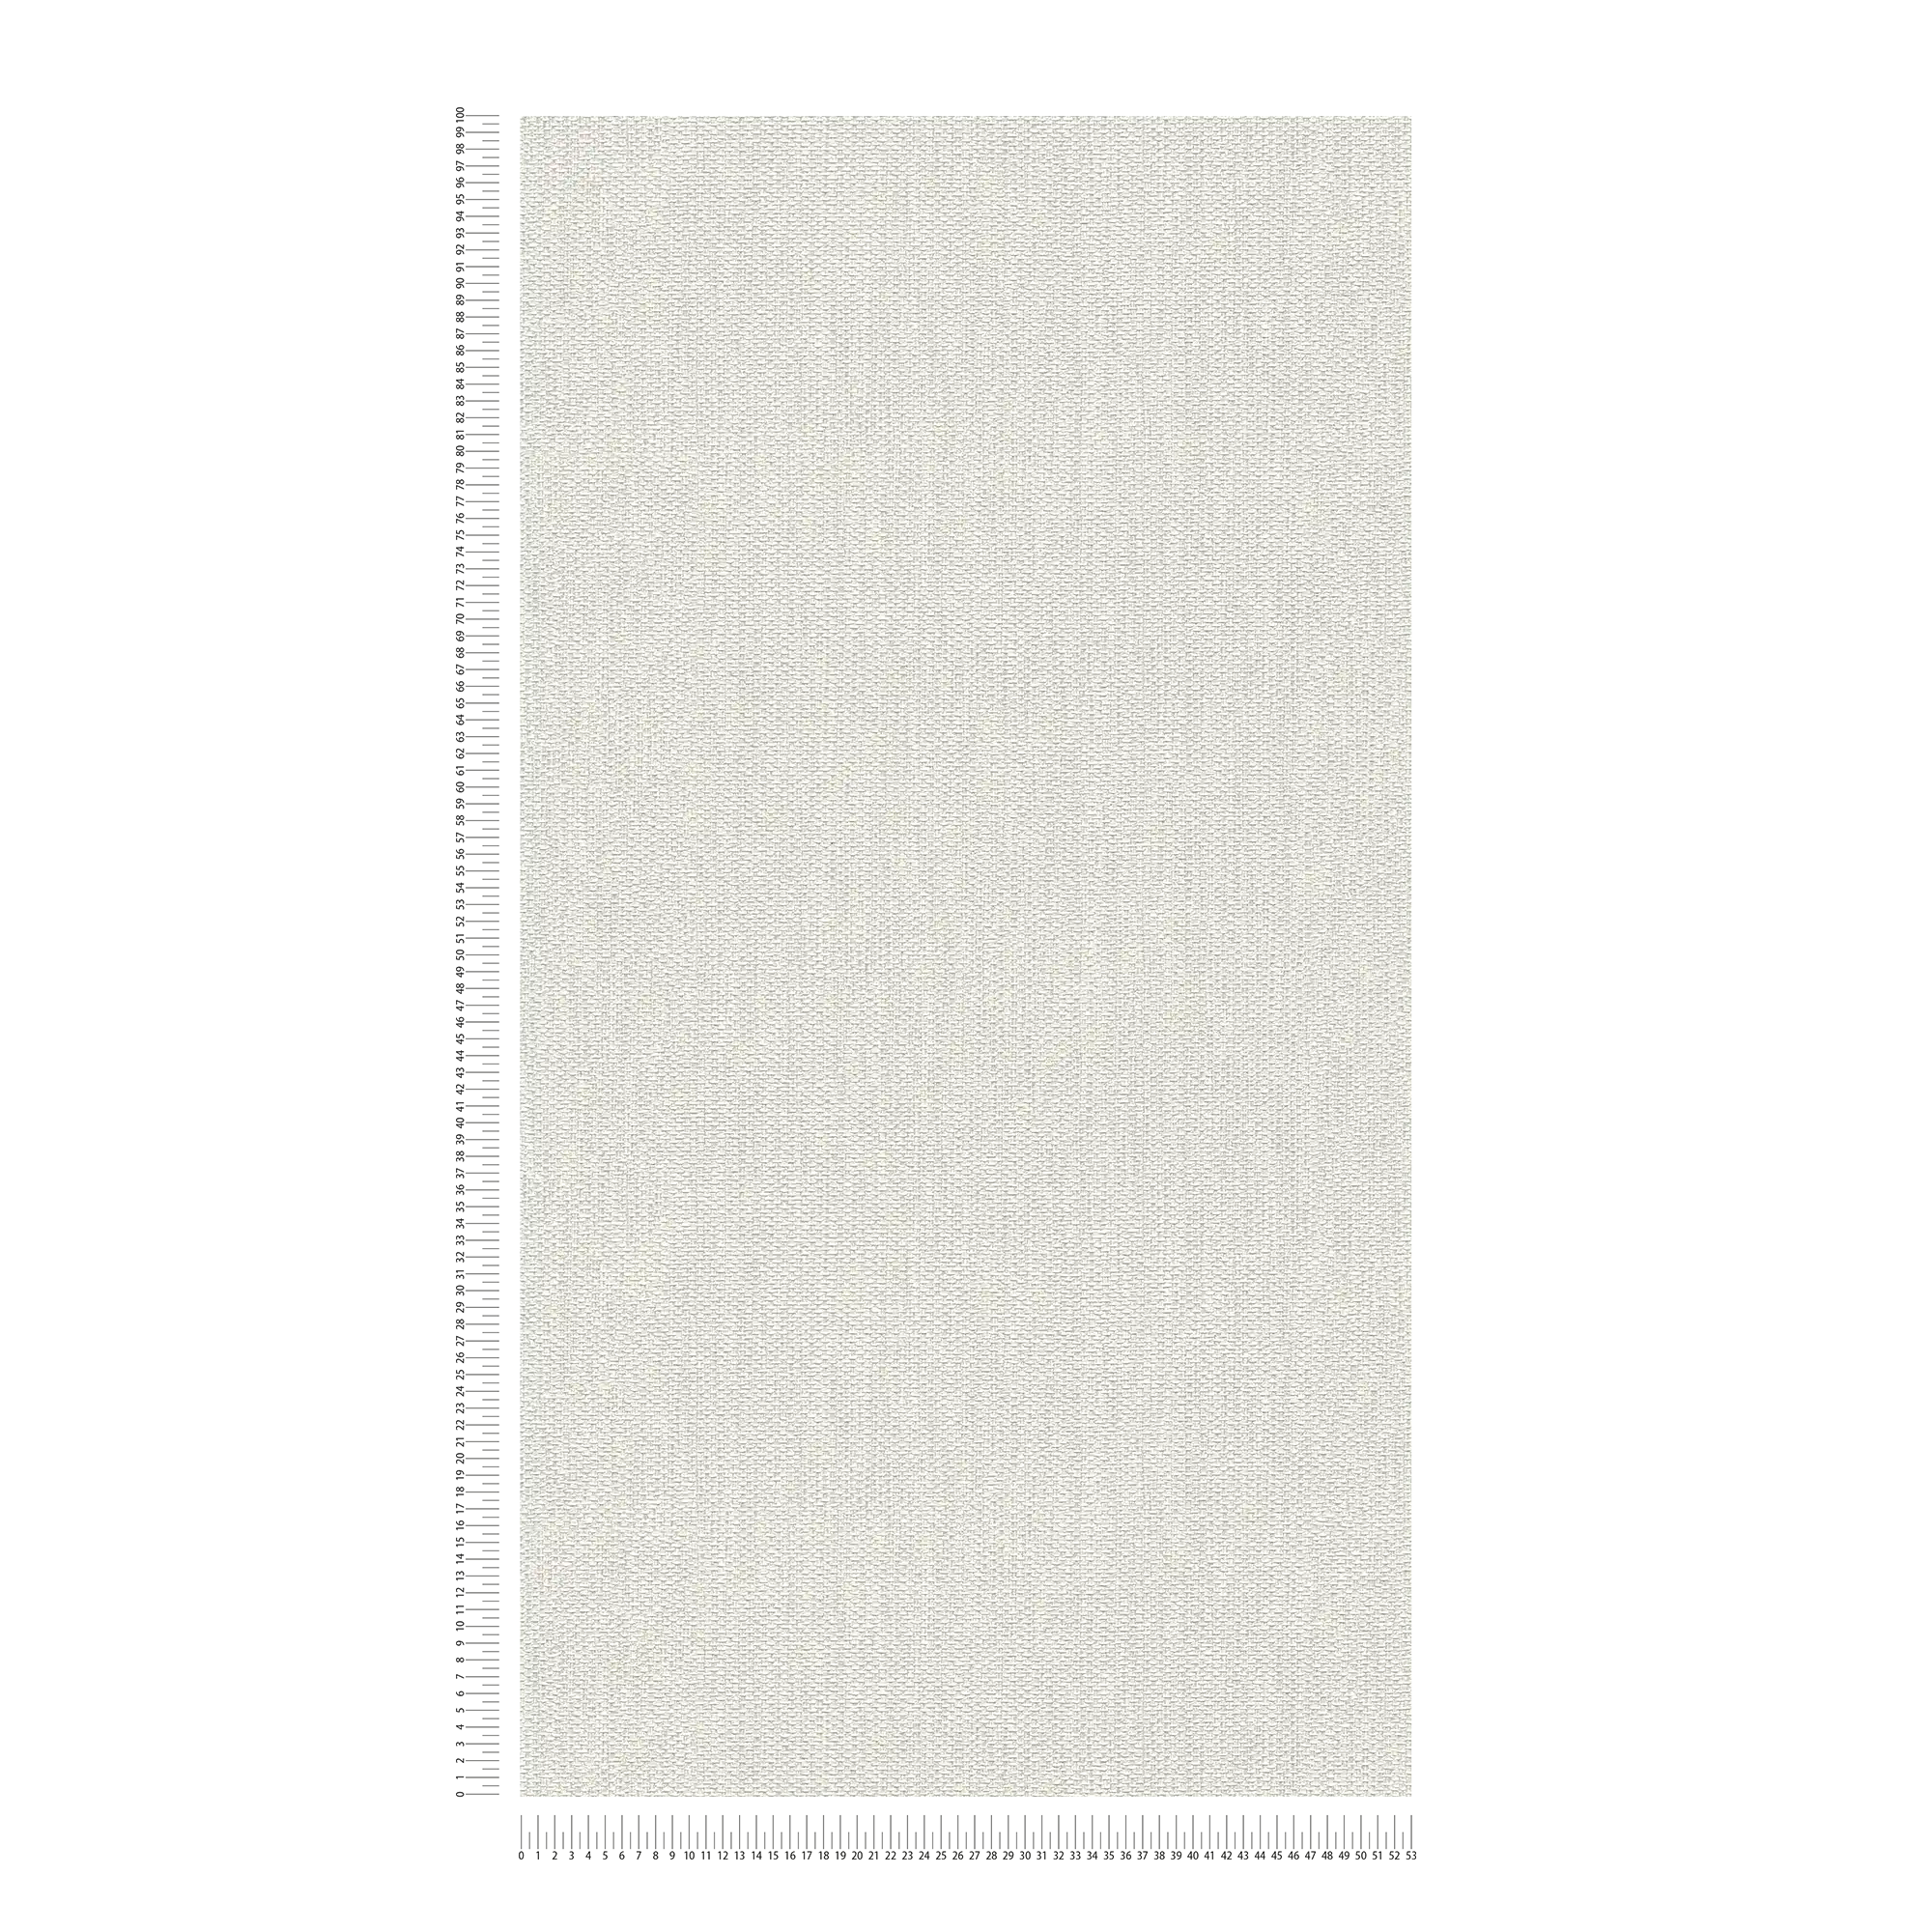             Carta da parati con texture tessuto ed effetto metallico - grigio
        